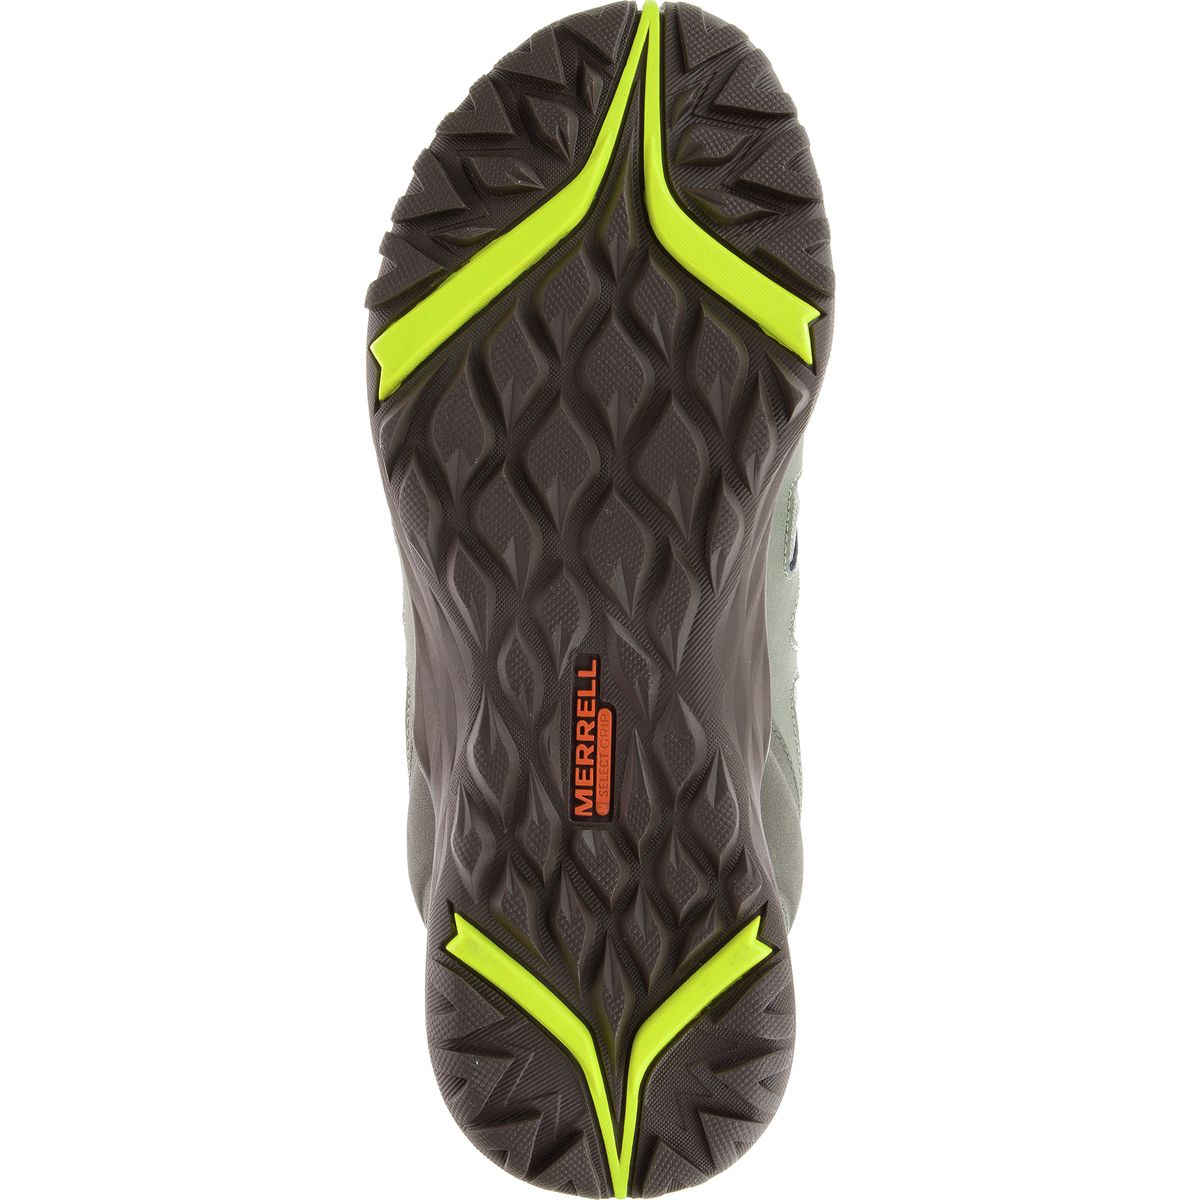 Merrell Siren Sport Q2 Mid Waterproof Hiking Boot - Women's -